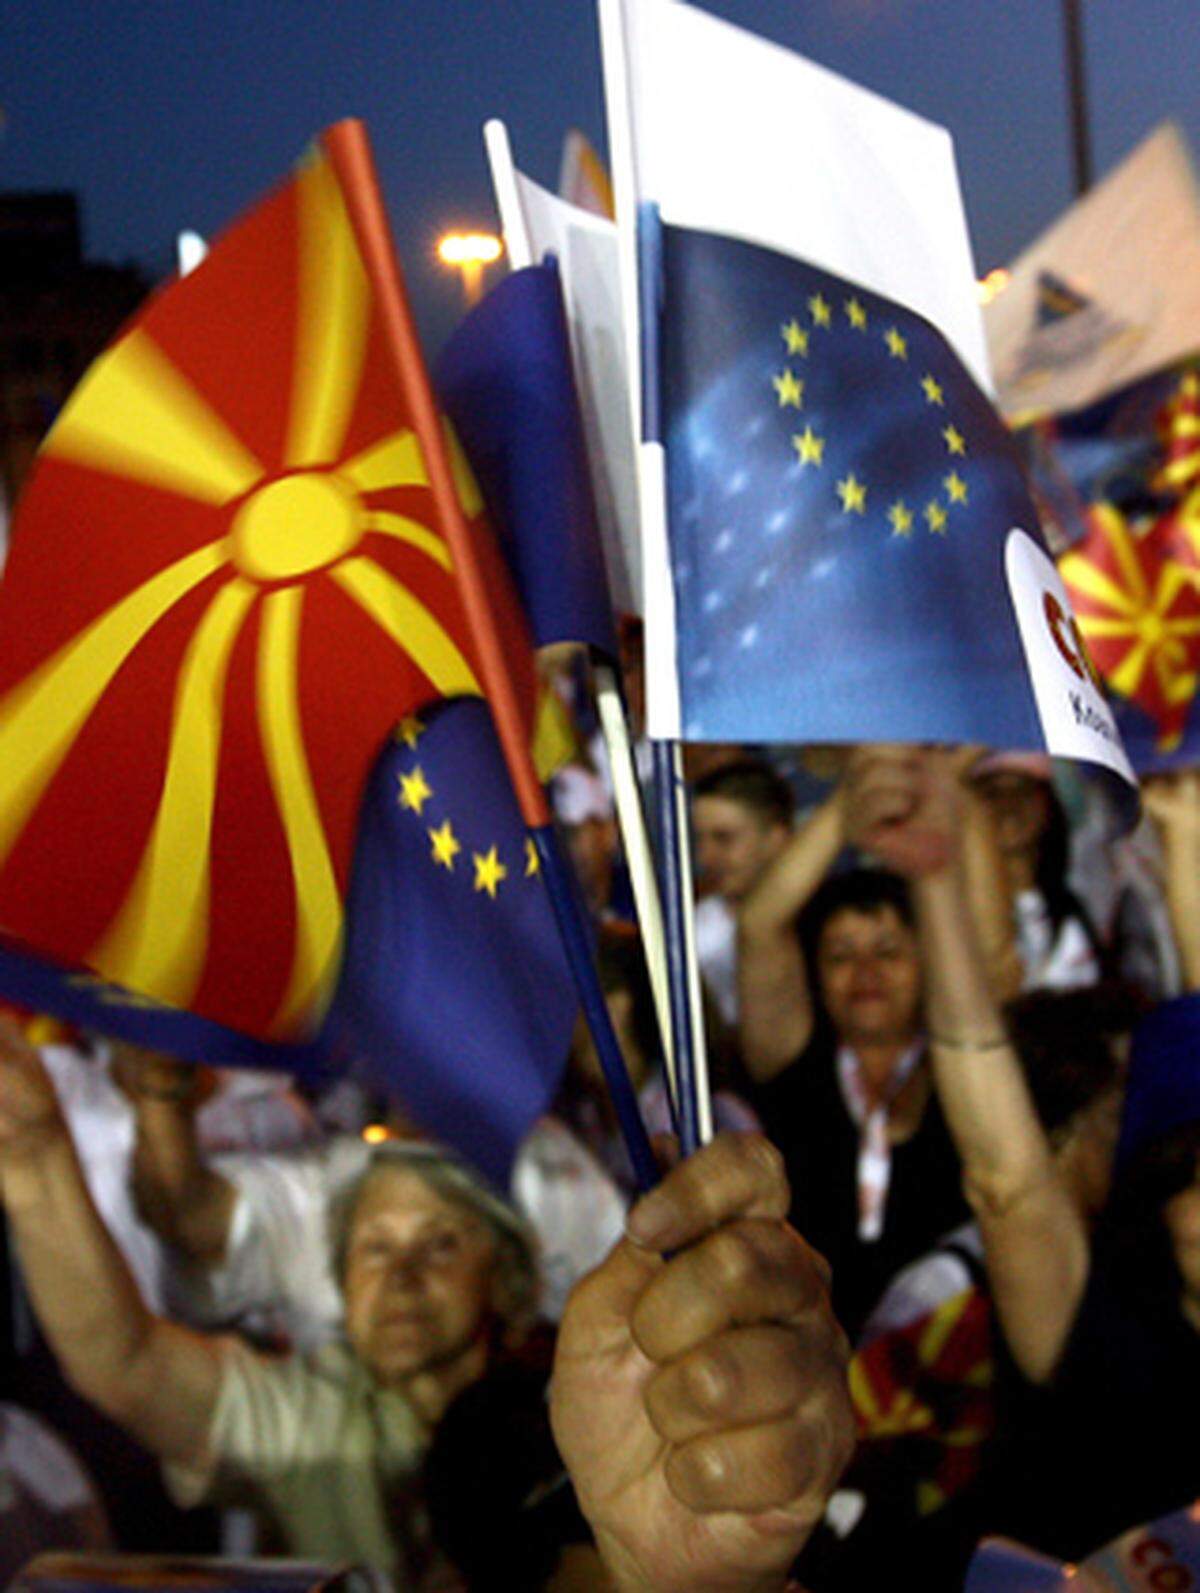 Mazedonien hat gute Chancen auf einen Beitritt. Der Namensstreit mit Griechenland, eine der großen Hürden, ist aber weiter ungelöst. Griechenland fürchtet durch den Namen "Mazedonien" Ansprüche auf seine gleichnamige Provinz. Der Streit blockiert die Aufnahme von Beitrittsverhandlungen - obwohl Mazedonien bereits den Status eines Beitrittskandidaten hat.